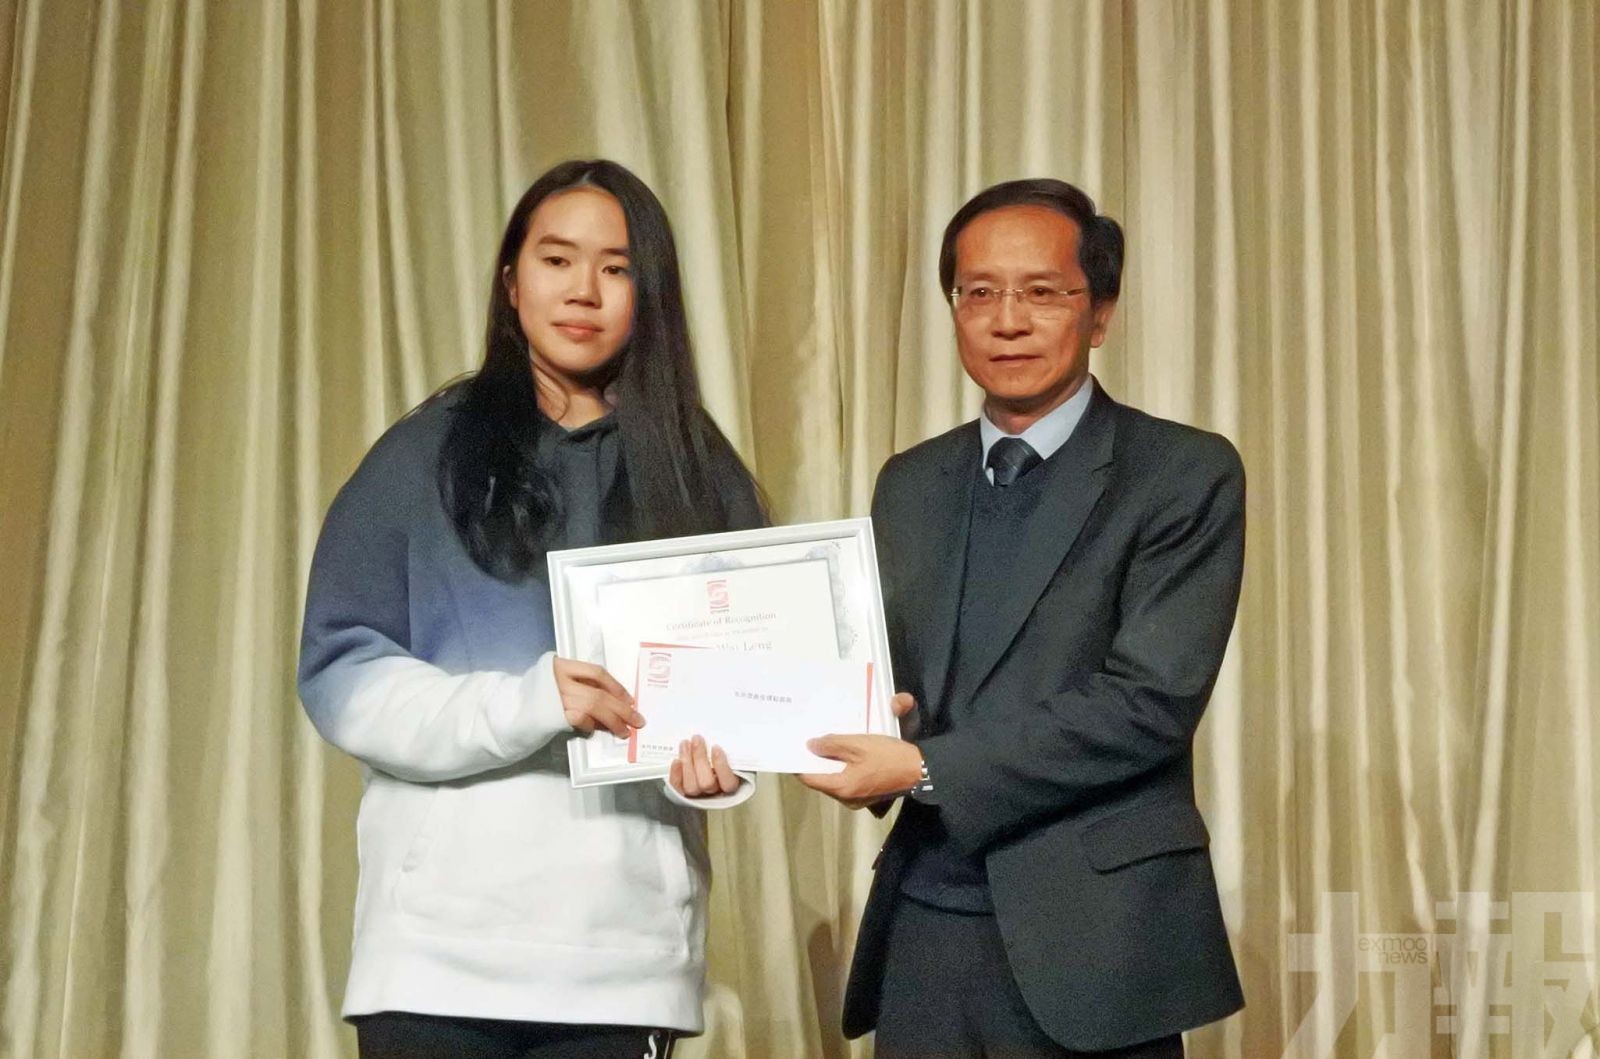 楊慧鈴榮膺全年最佳壁球運動員